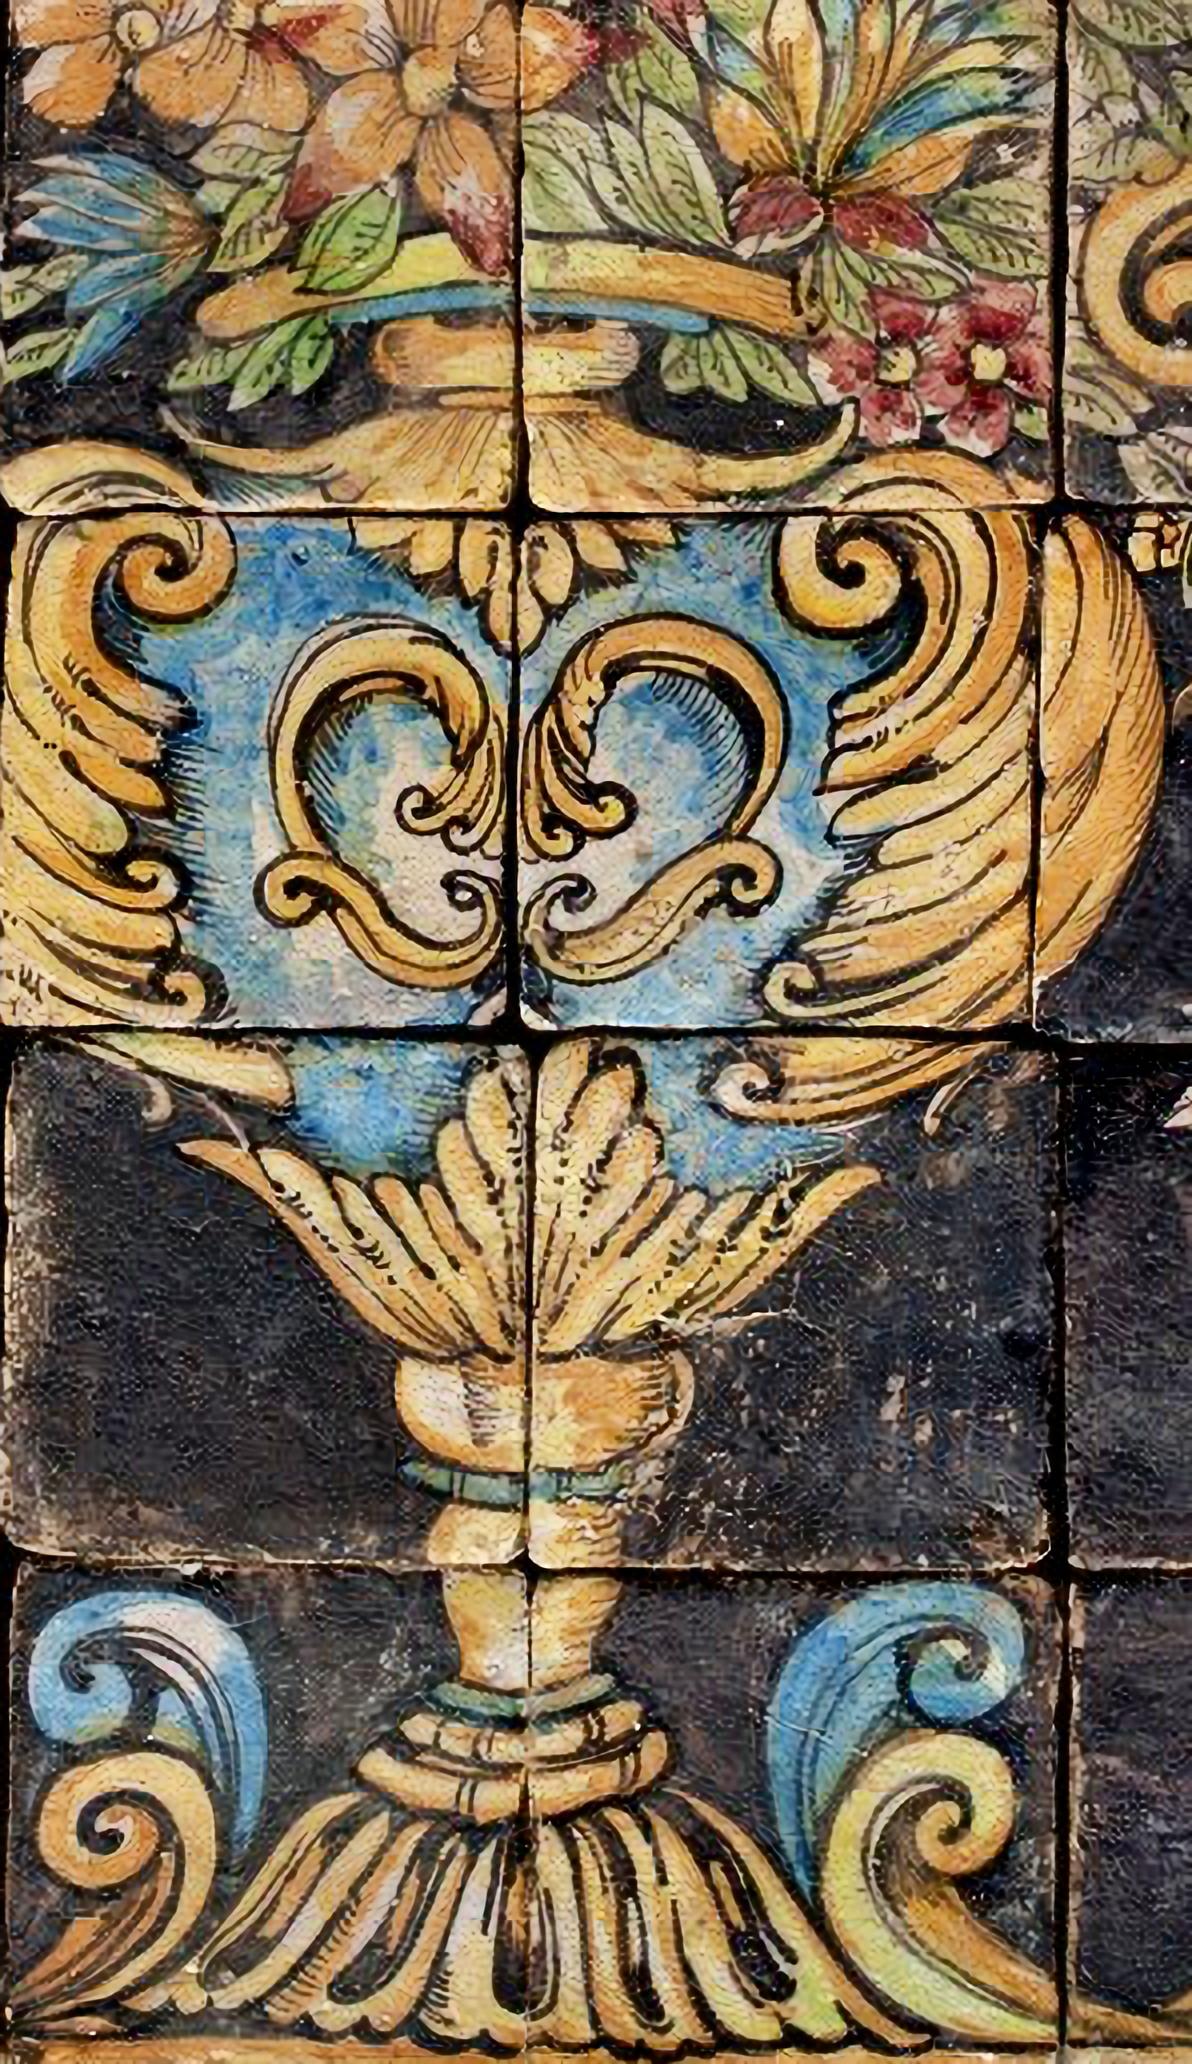 PANNEAU MAJOLIQUE SICILIEN fin 19ème siècle

Panneau réalisé avec 36 carreaux de 17x17 cm.
Panneau d'inspiration baroque sicilienne classique.

HAUTEUR 102 cm
LARGEUR 102 cm
ÉPAISSEUR 1,2 cm
POIDS 20 Kg
MATERIAL Majolica sur biscuit fait